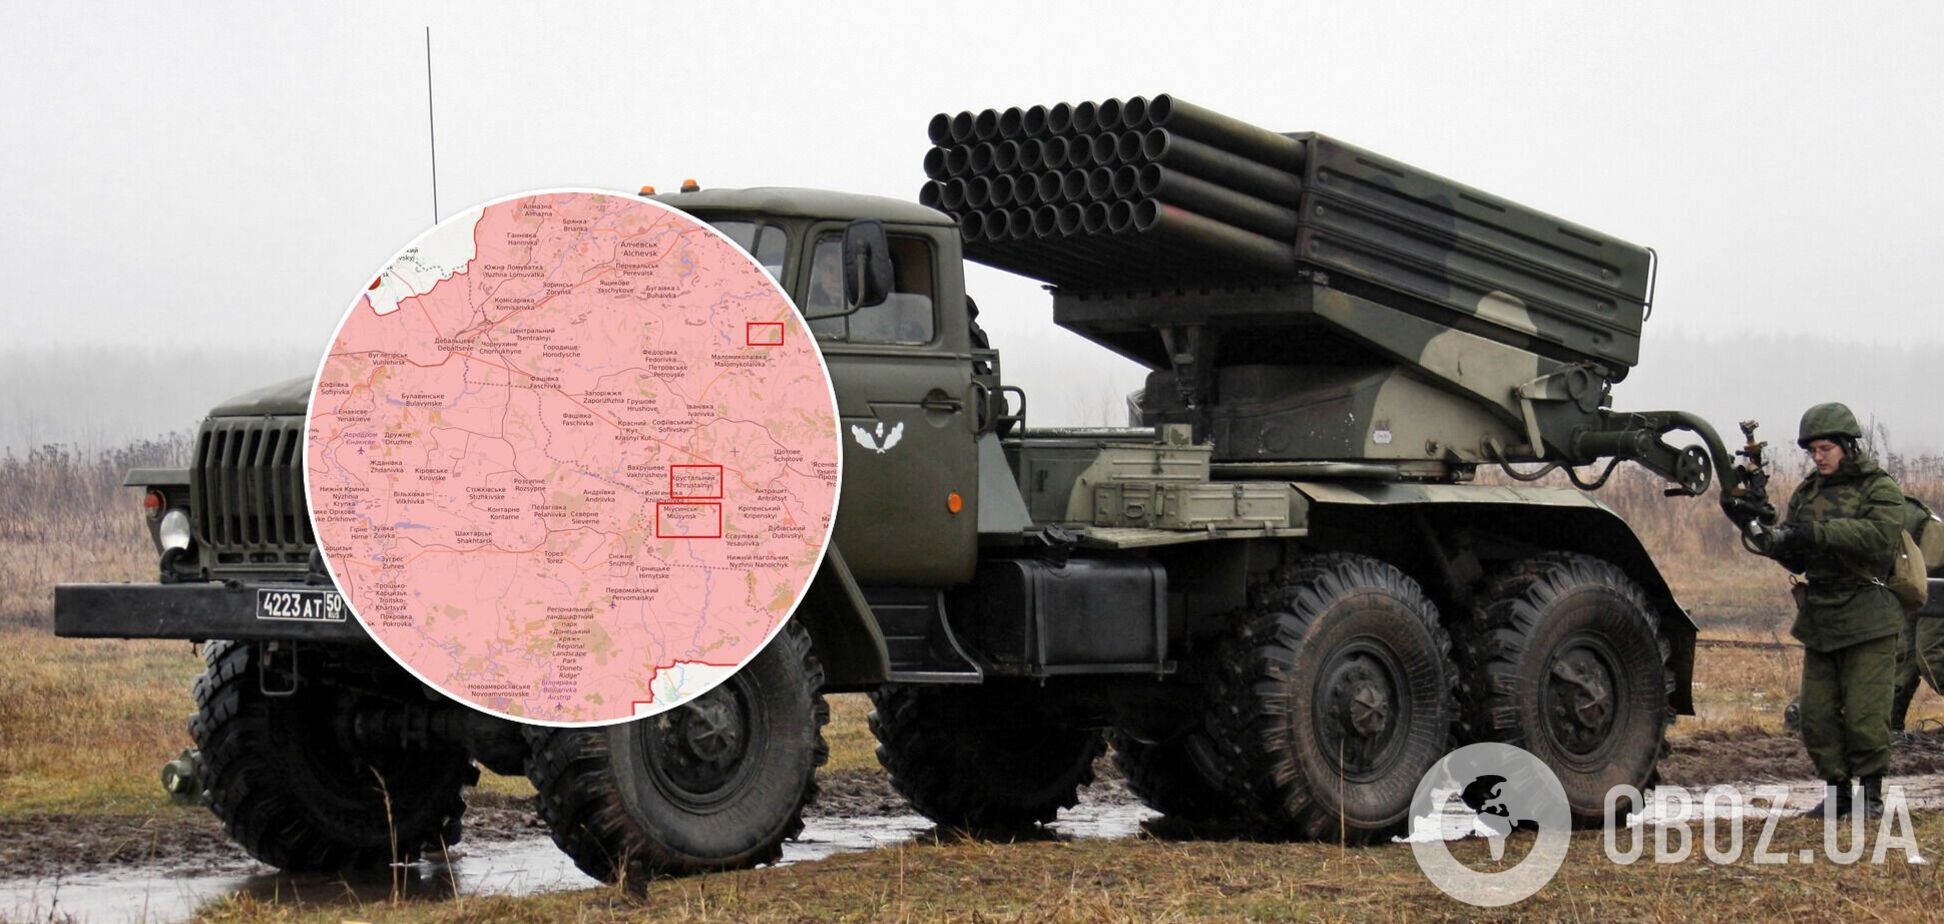 ОБСЕ засекла 15 'Градов', танки и гаубицы оккупантов на Донбассе